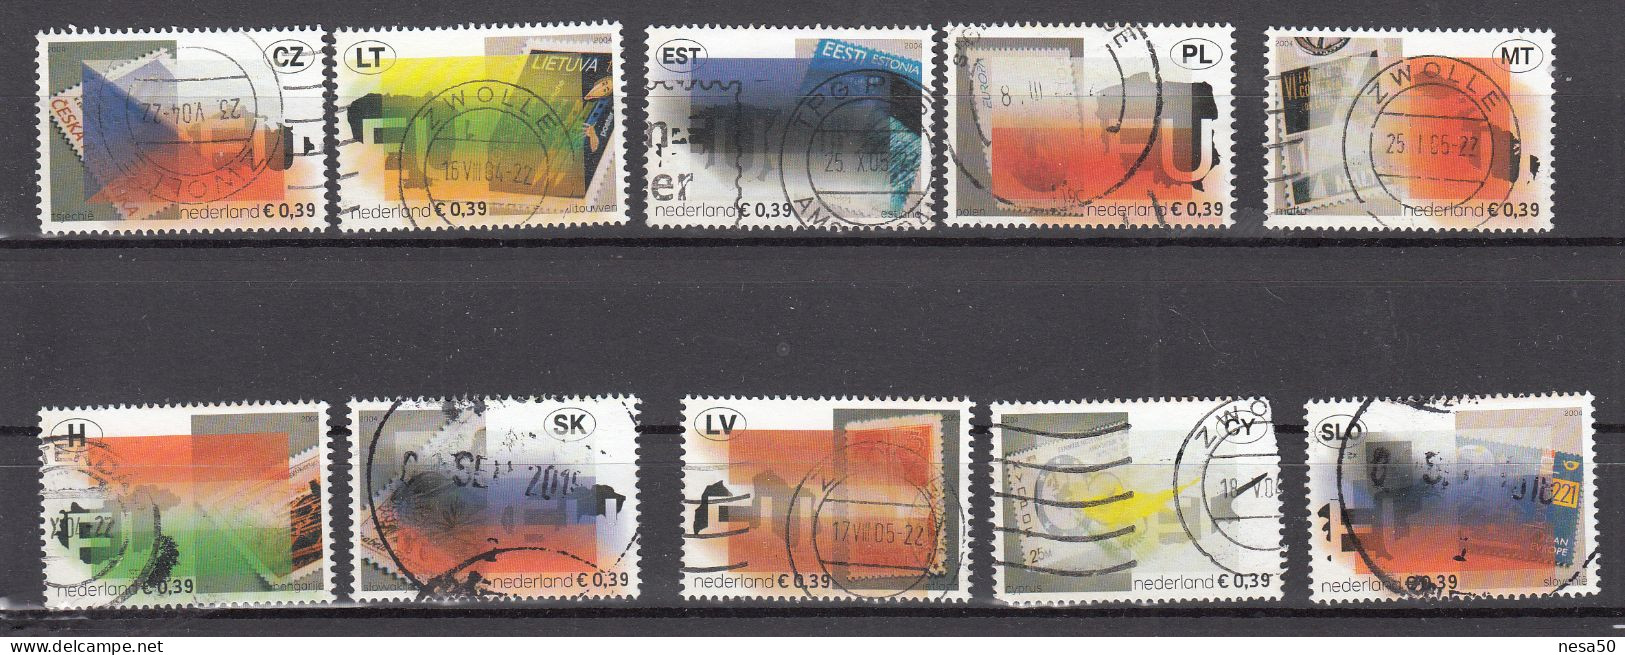 Nederland 2004 NVPH Nr 2260 - 2269 ,  Mi Nr 2205 - 2214 ; Uitbreiding Europese Unie - Gebraucht